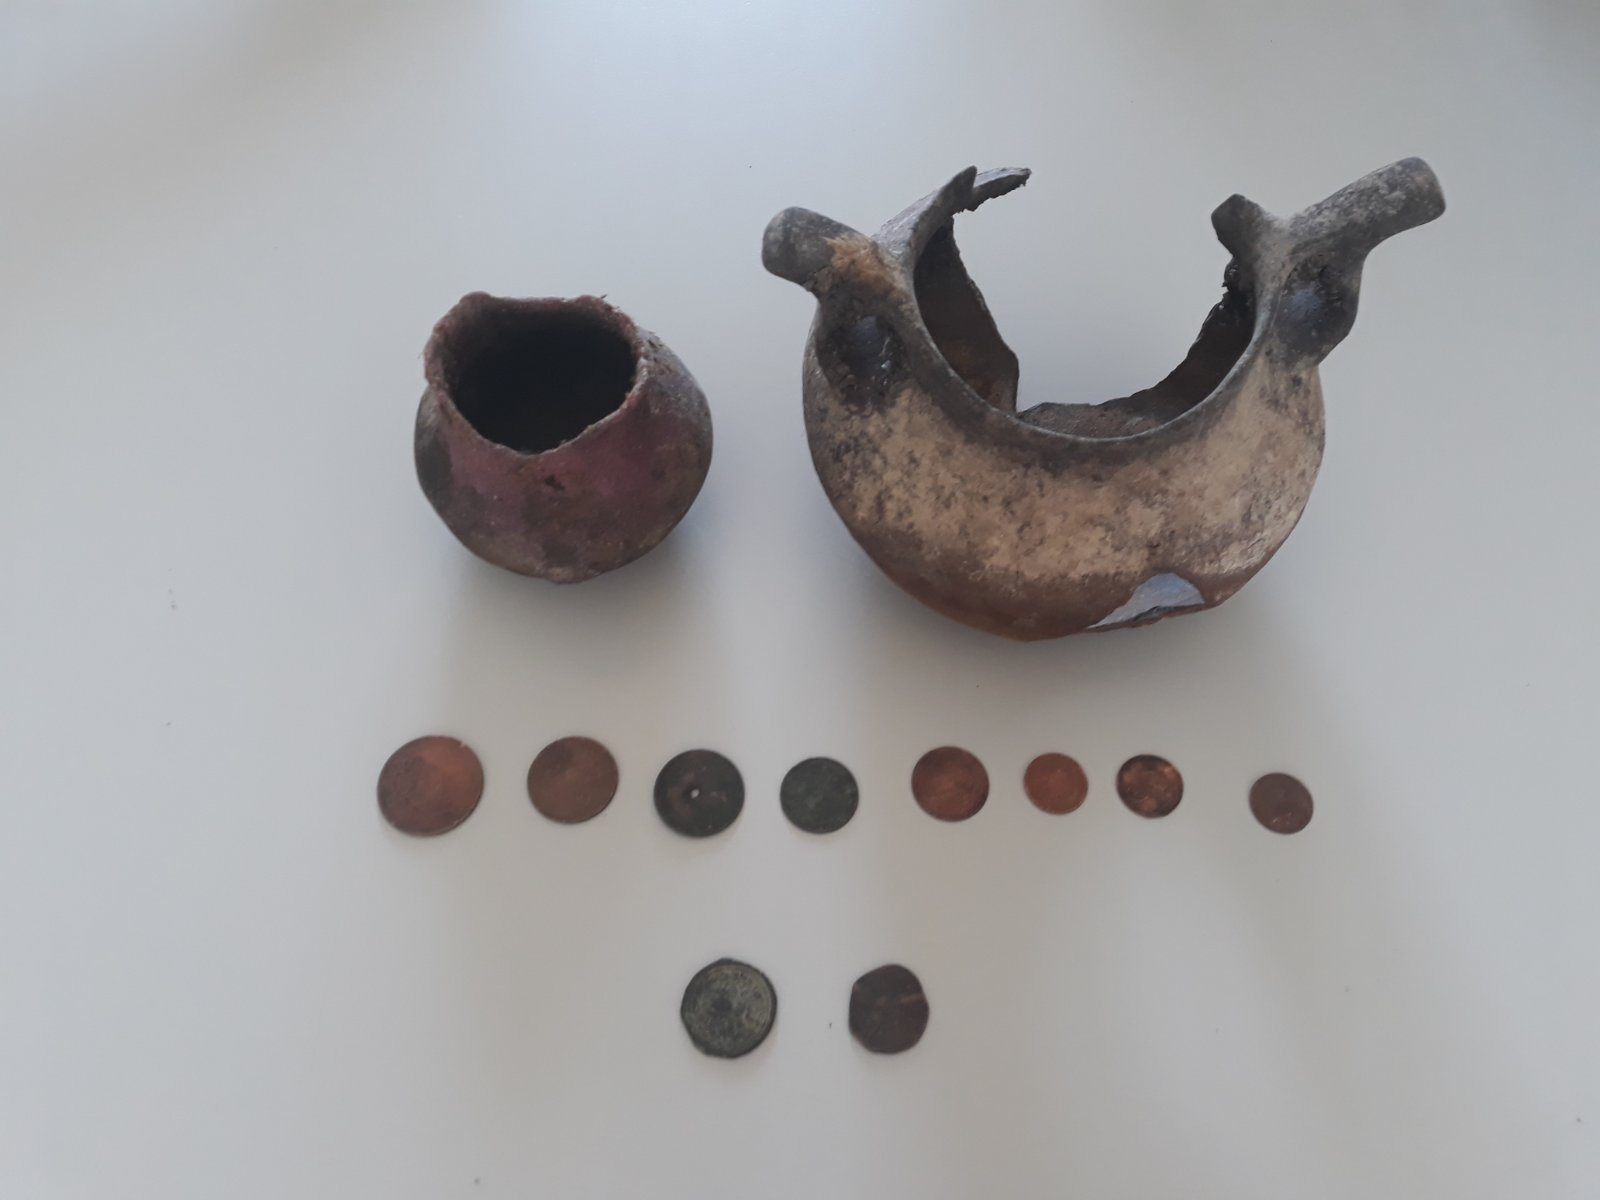 Φλώρινα: Μεγάλες ποσότητες πολεμικού υλικού καθώς και αντικείμενα αρχαιολογικής αξίας, βρέθηκαν και κατασχέθηκαν σε οικία